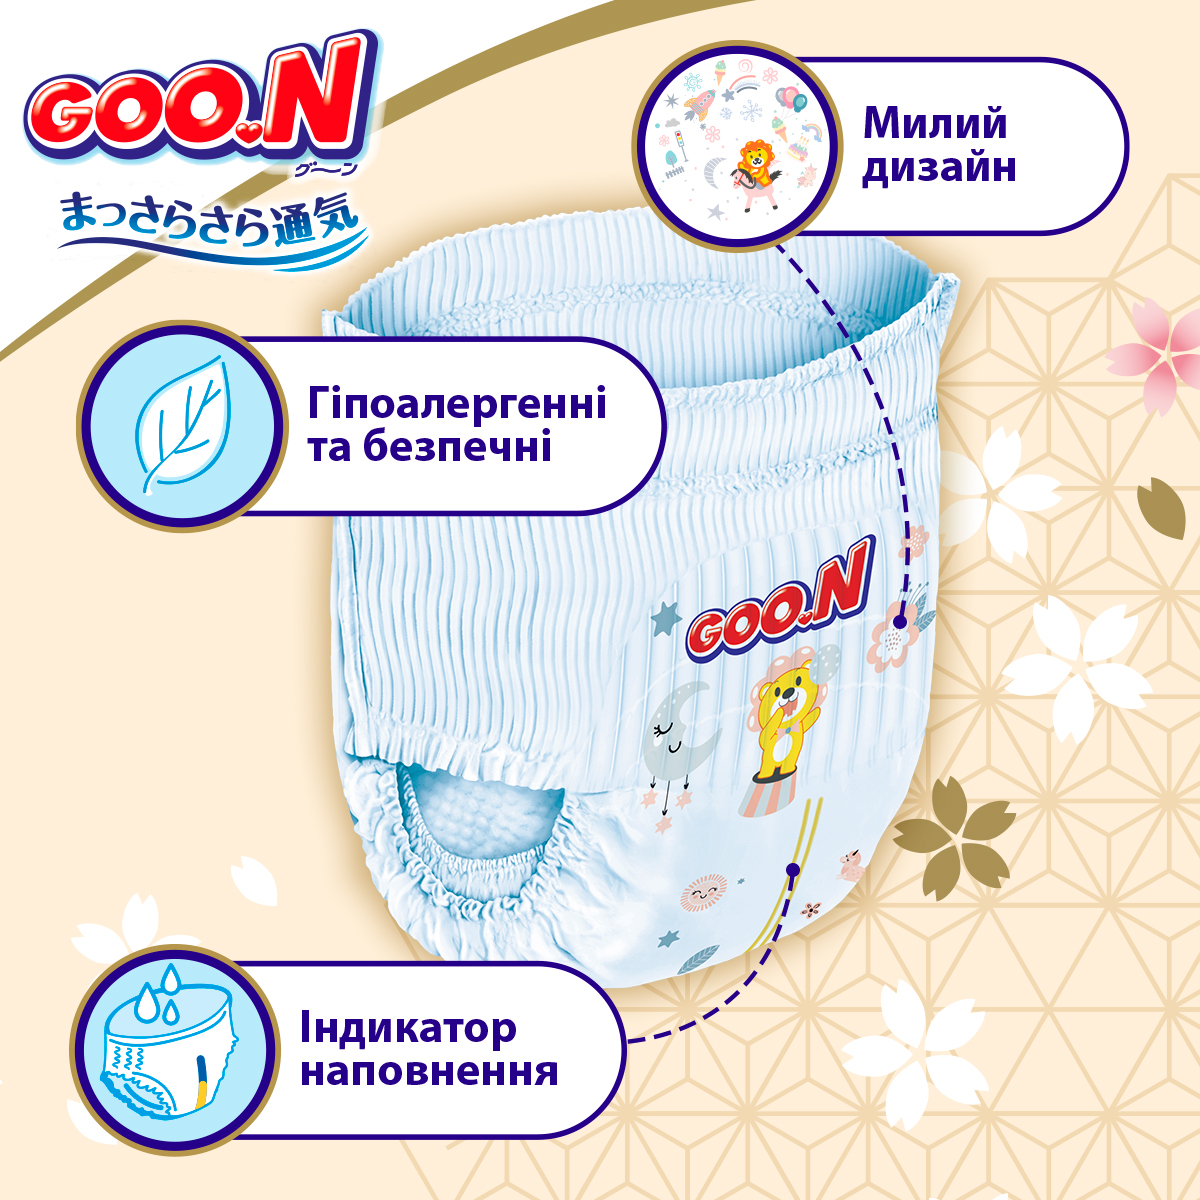 Трусики-підгузки Goo.N Premium Soft розмір 5(XL) 12-17 кг доу-пак 72 шт. - фото 4